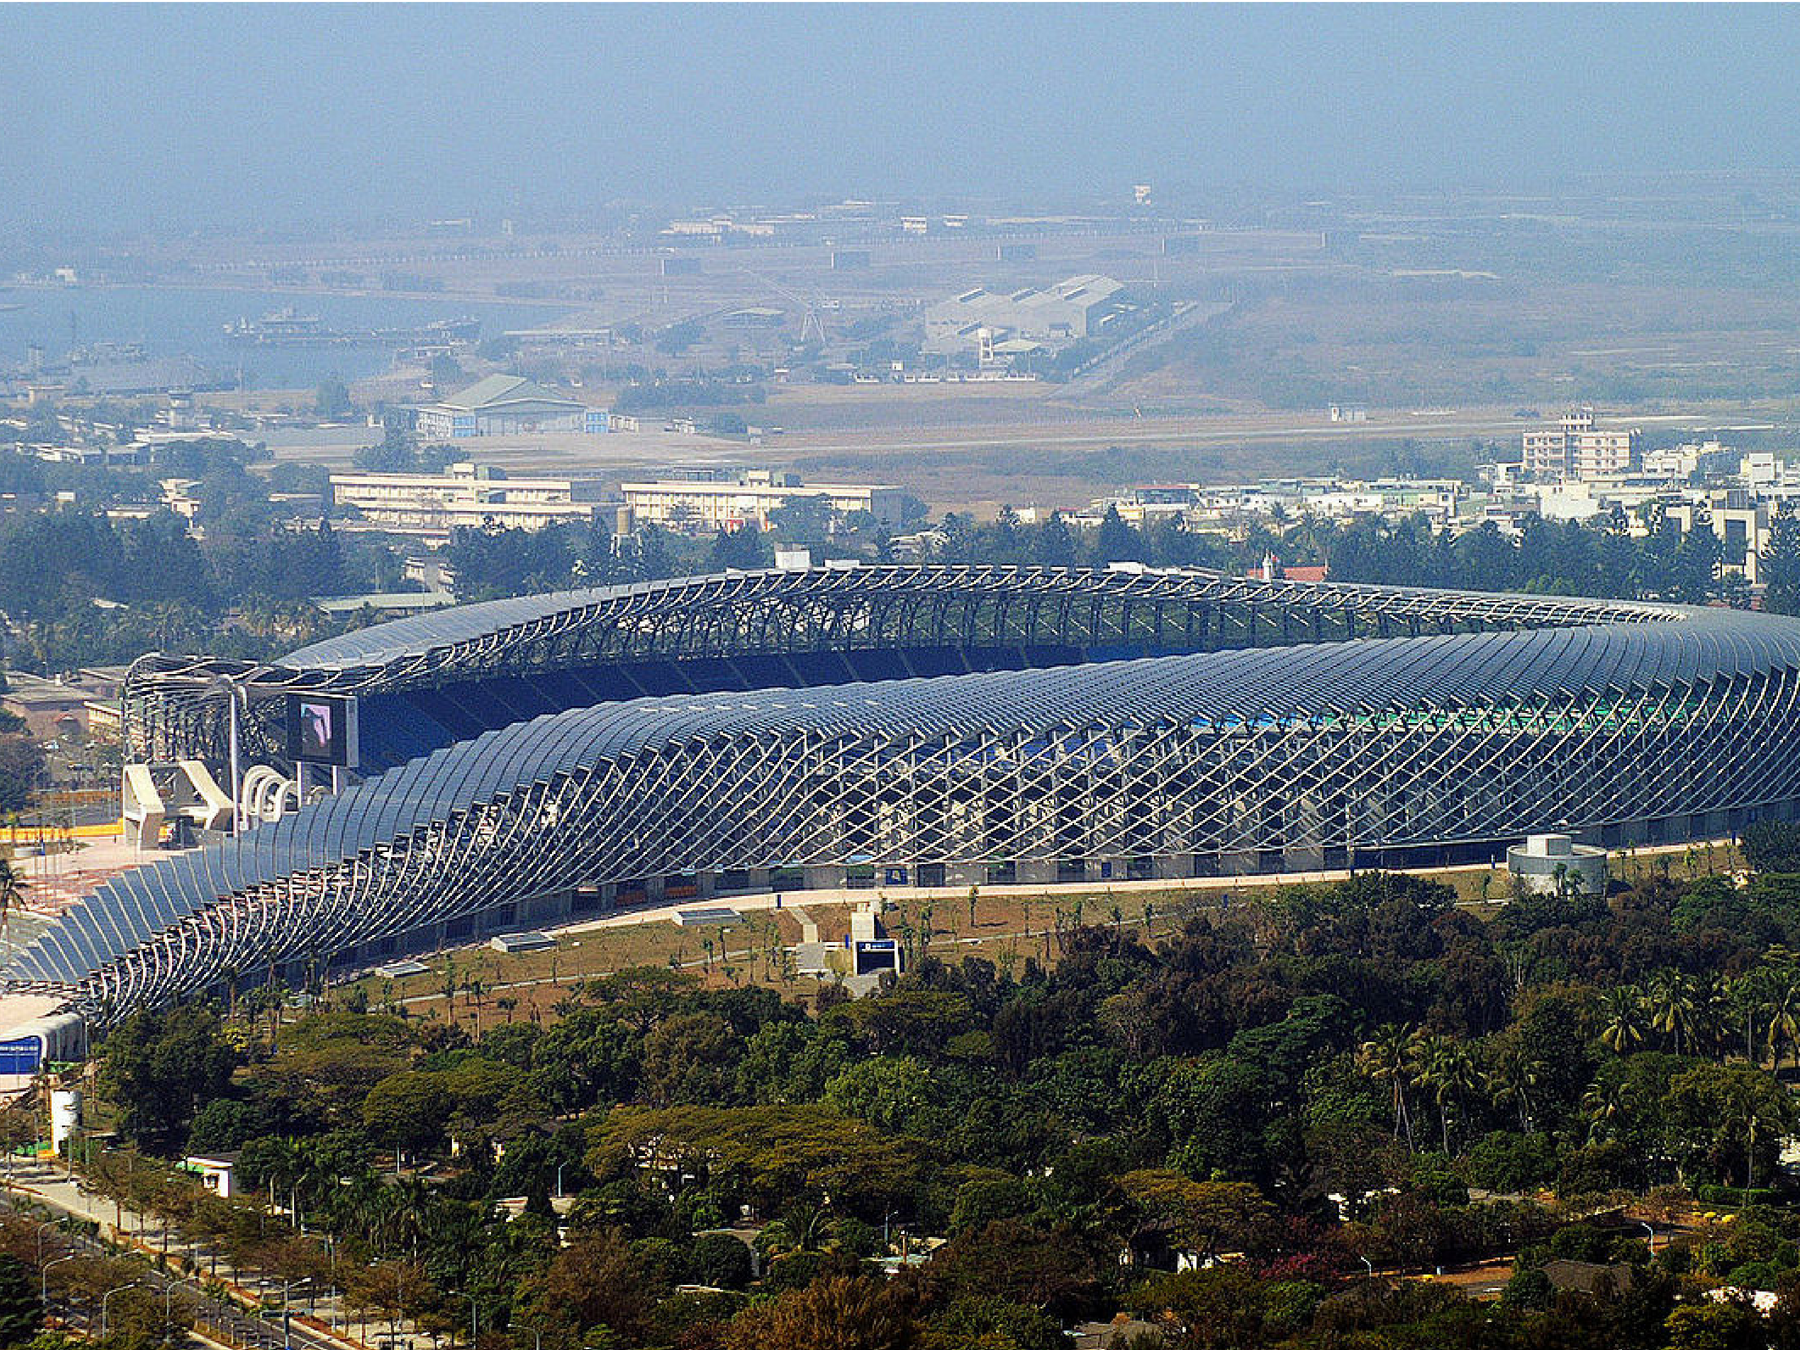 estádios-mais-legais-do-mundo-Calendário-da-copa-taiwan Os 20 estádios mais legais do mundo Calendário Copa 2018 